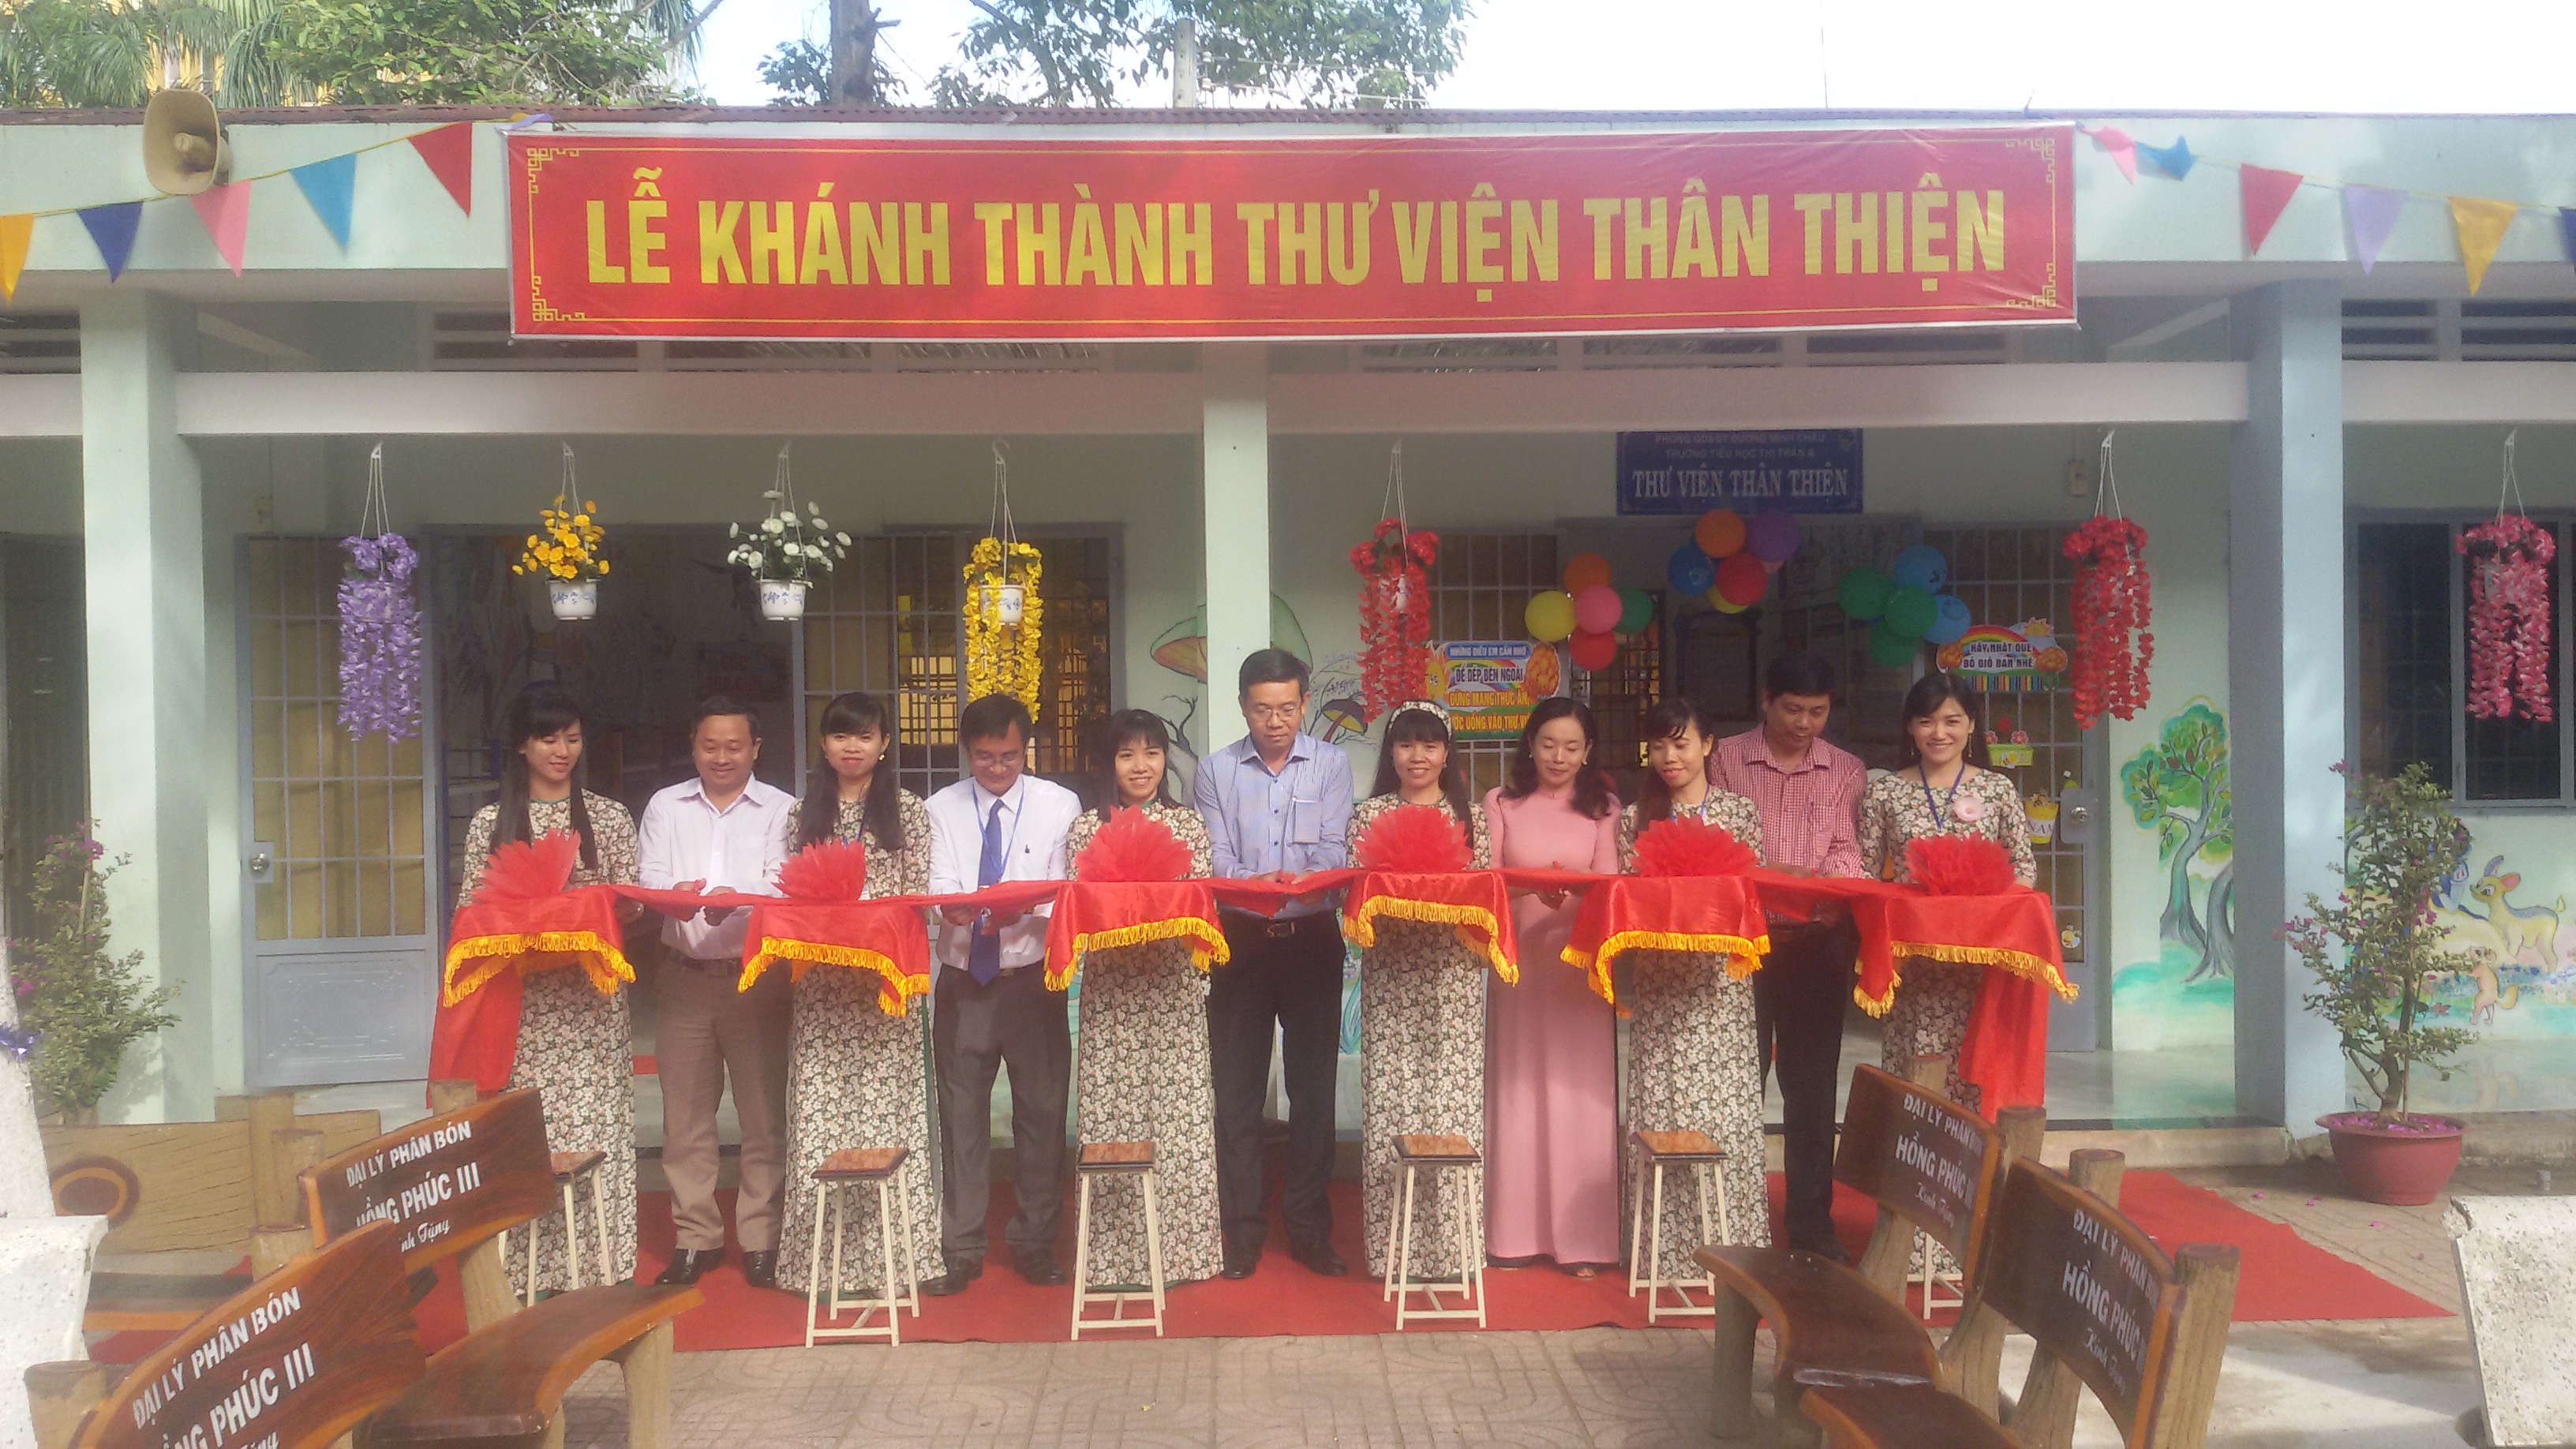 Trường Tiểu học Thị trấn A huyện Dương Minh Châu:  Khánh thành thư viện thân thiện và ngày hội đọc sách